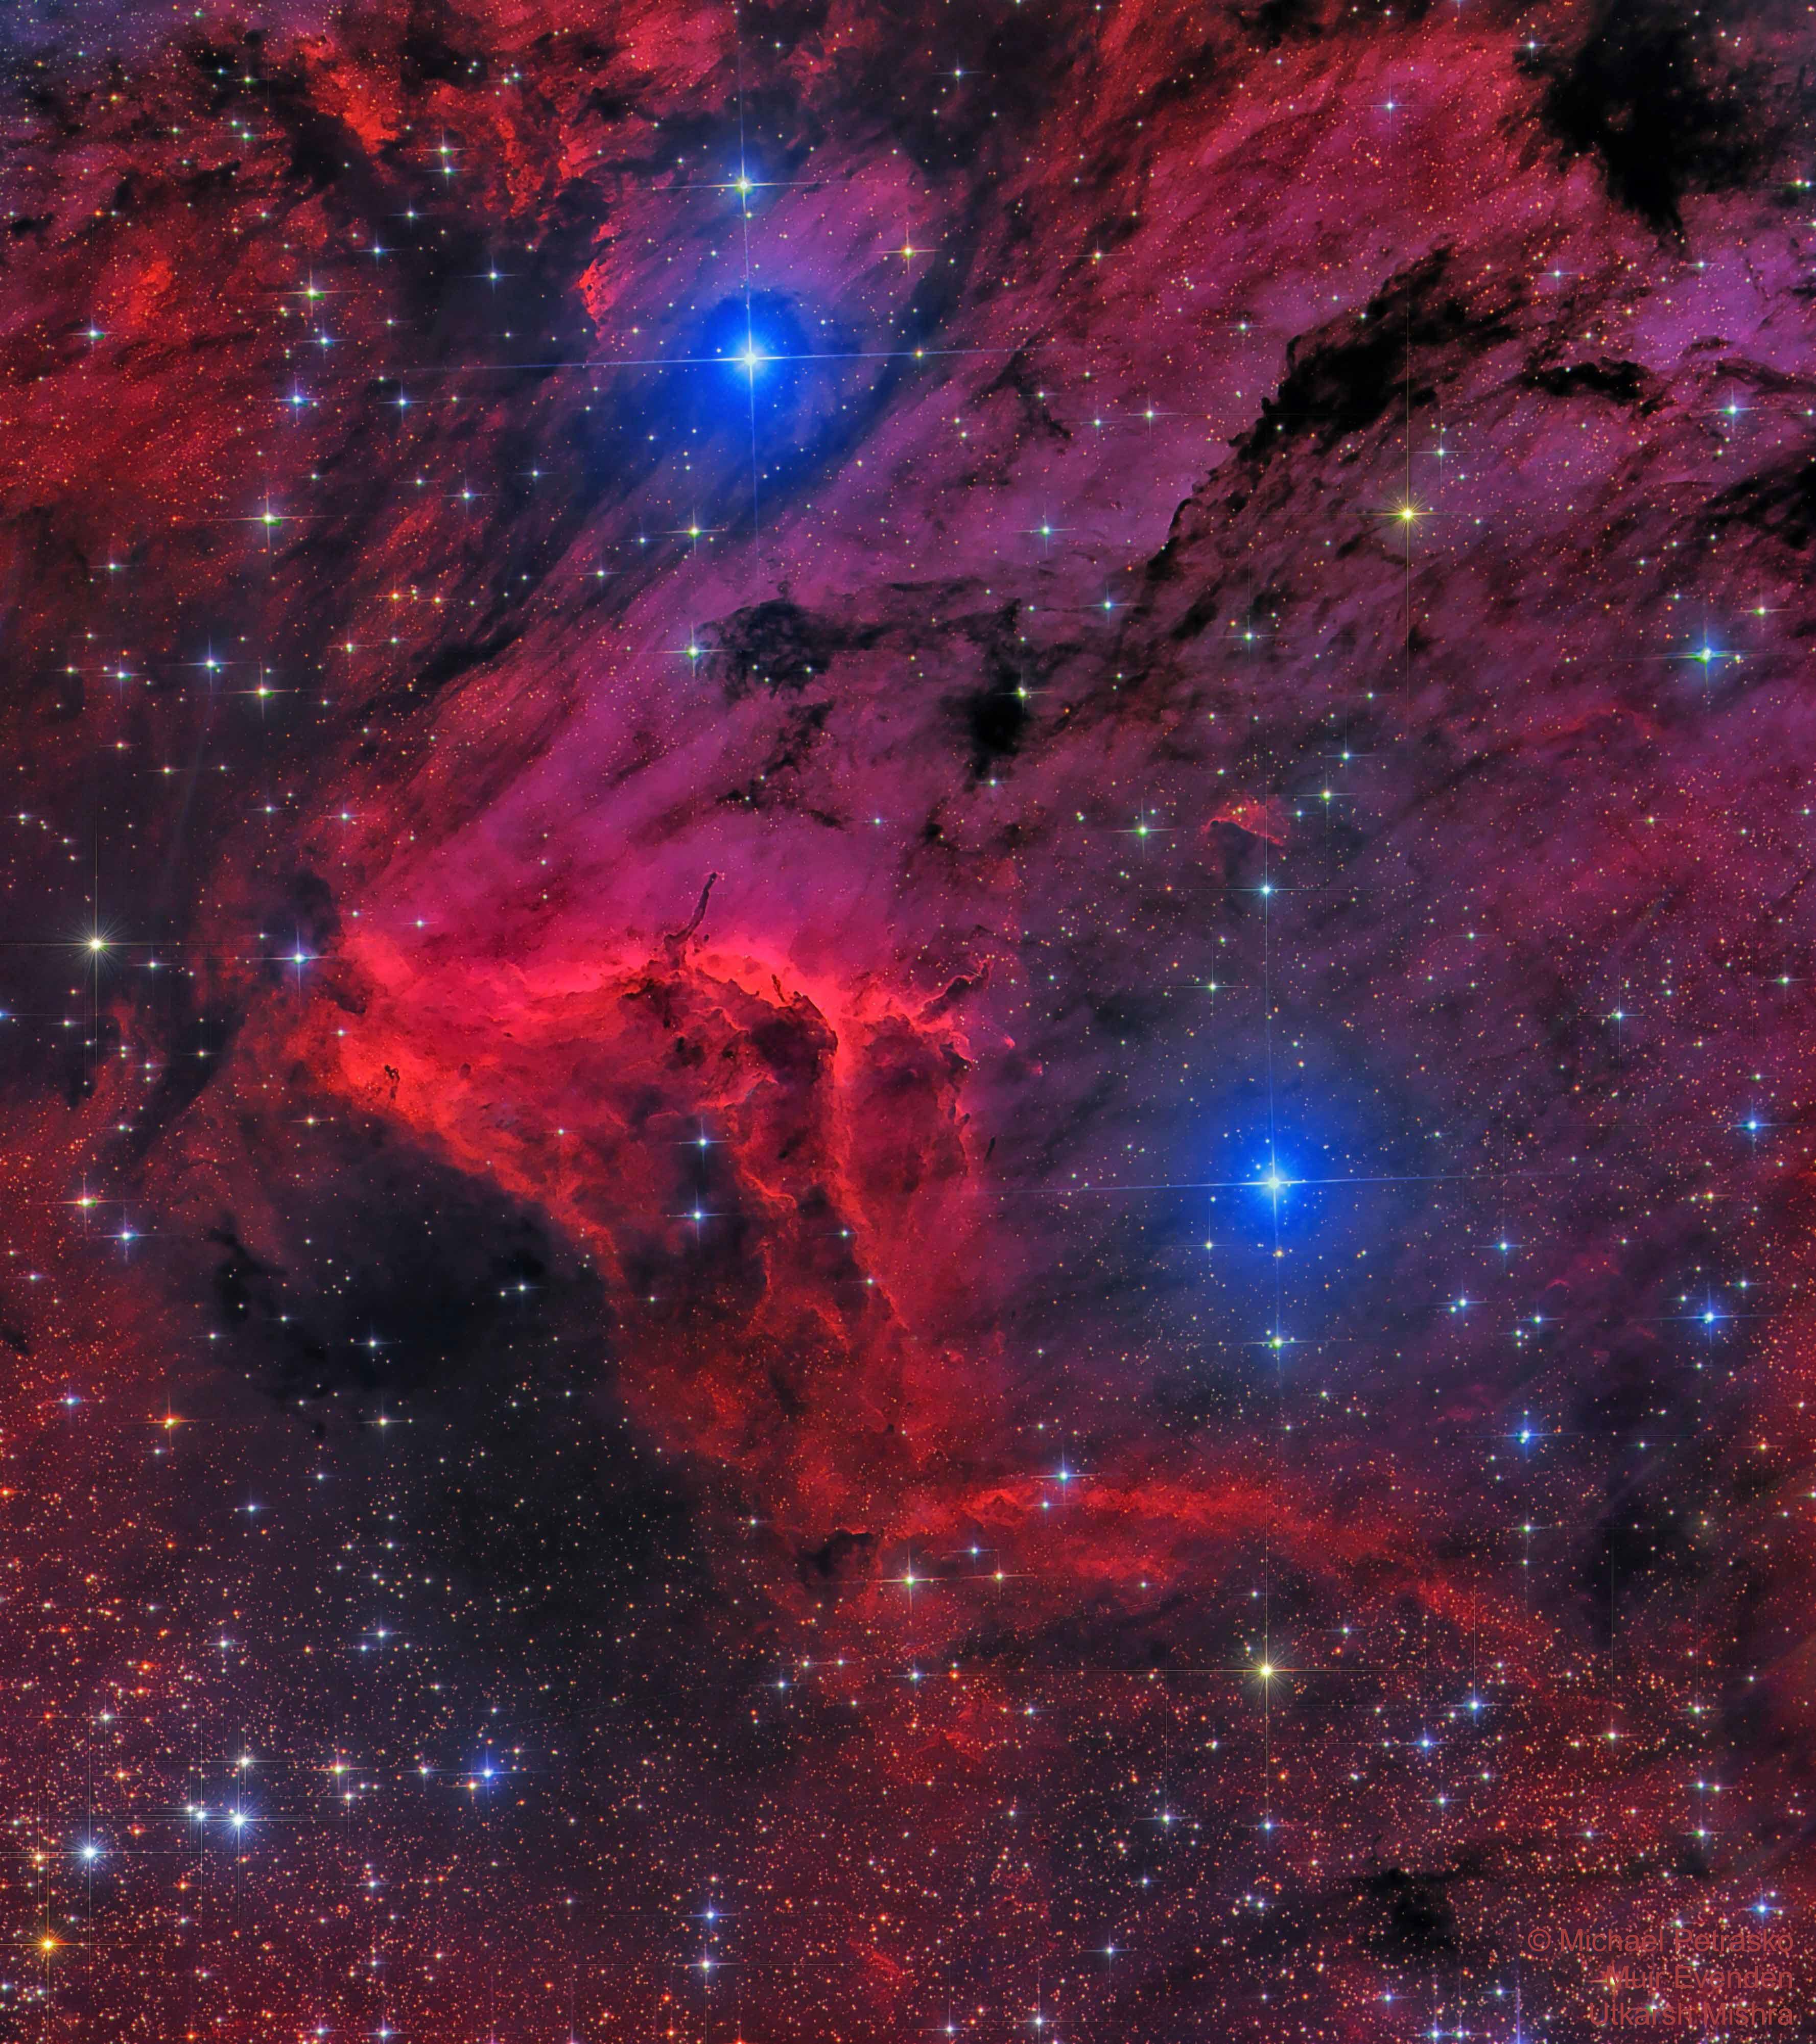 صورة لسديم البجعة تظهر فيها سحب الهيدروجين البينجميّ باللون الأحمر مع جبهة التأيّن في منتصف الصورة بلون أحمر فاقع، مع نجومٍ تظهر أكبرها بلونٍ أزرق.